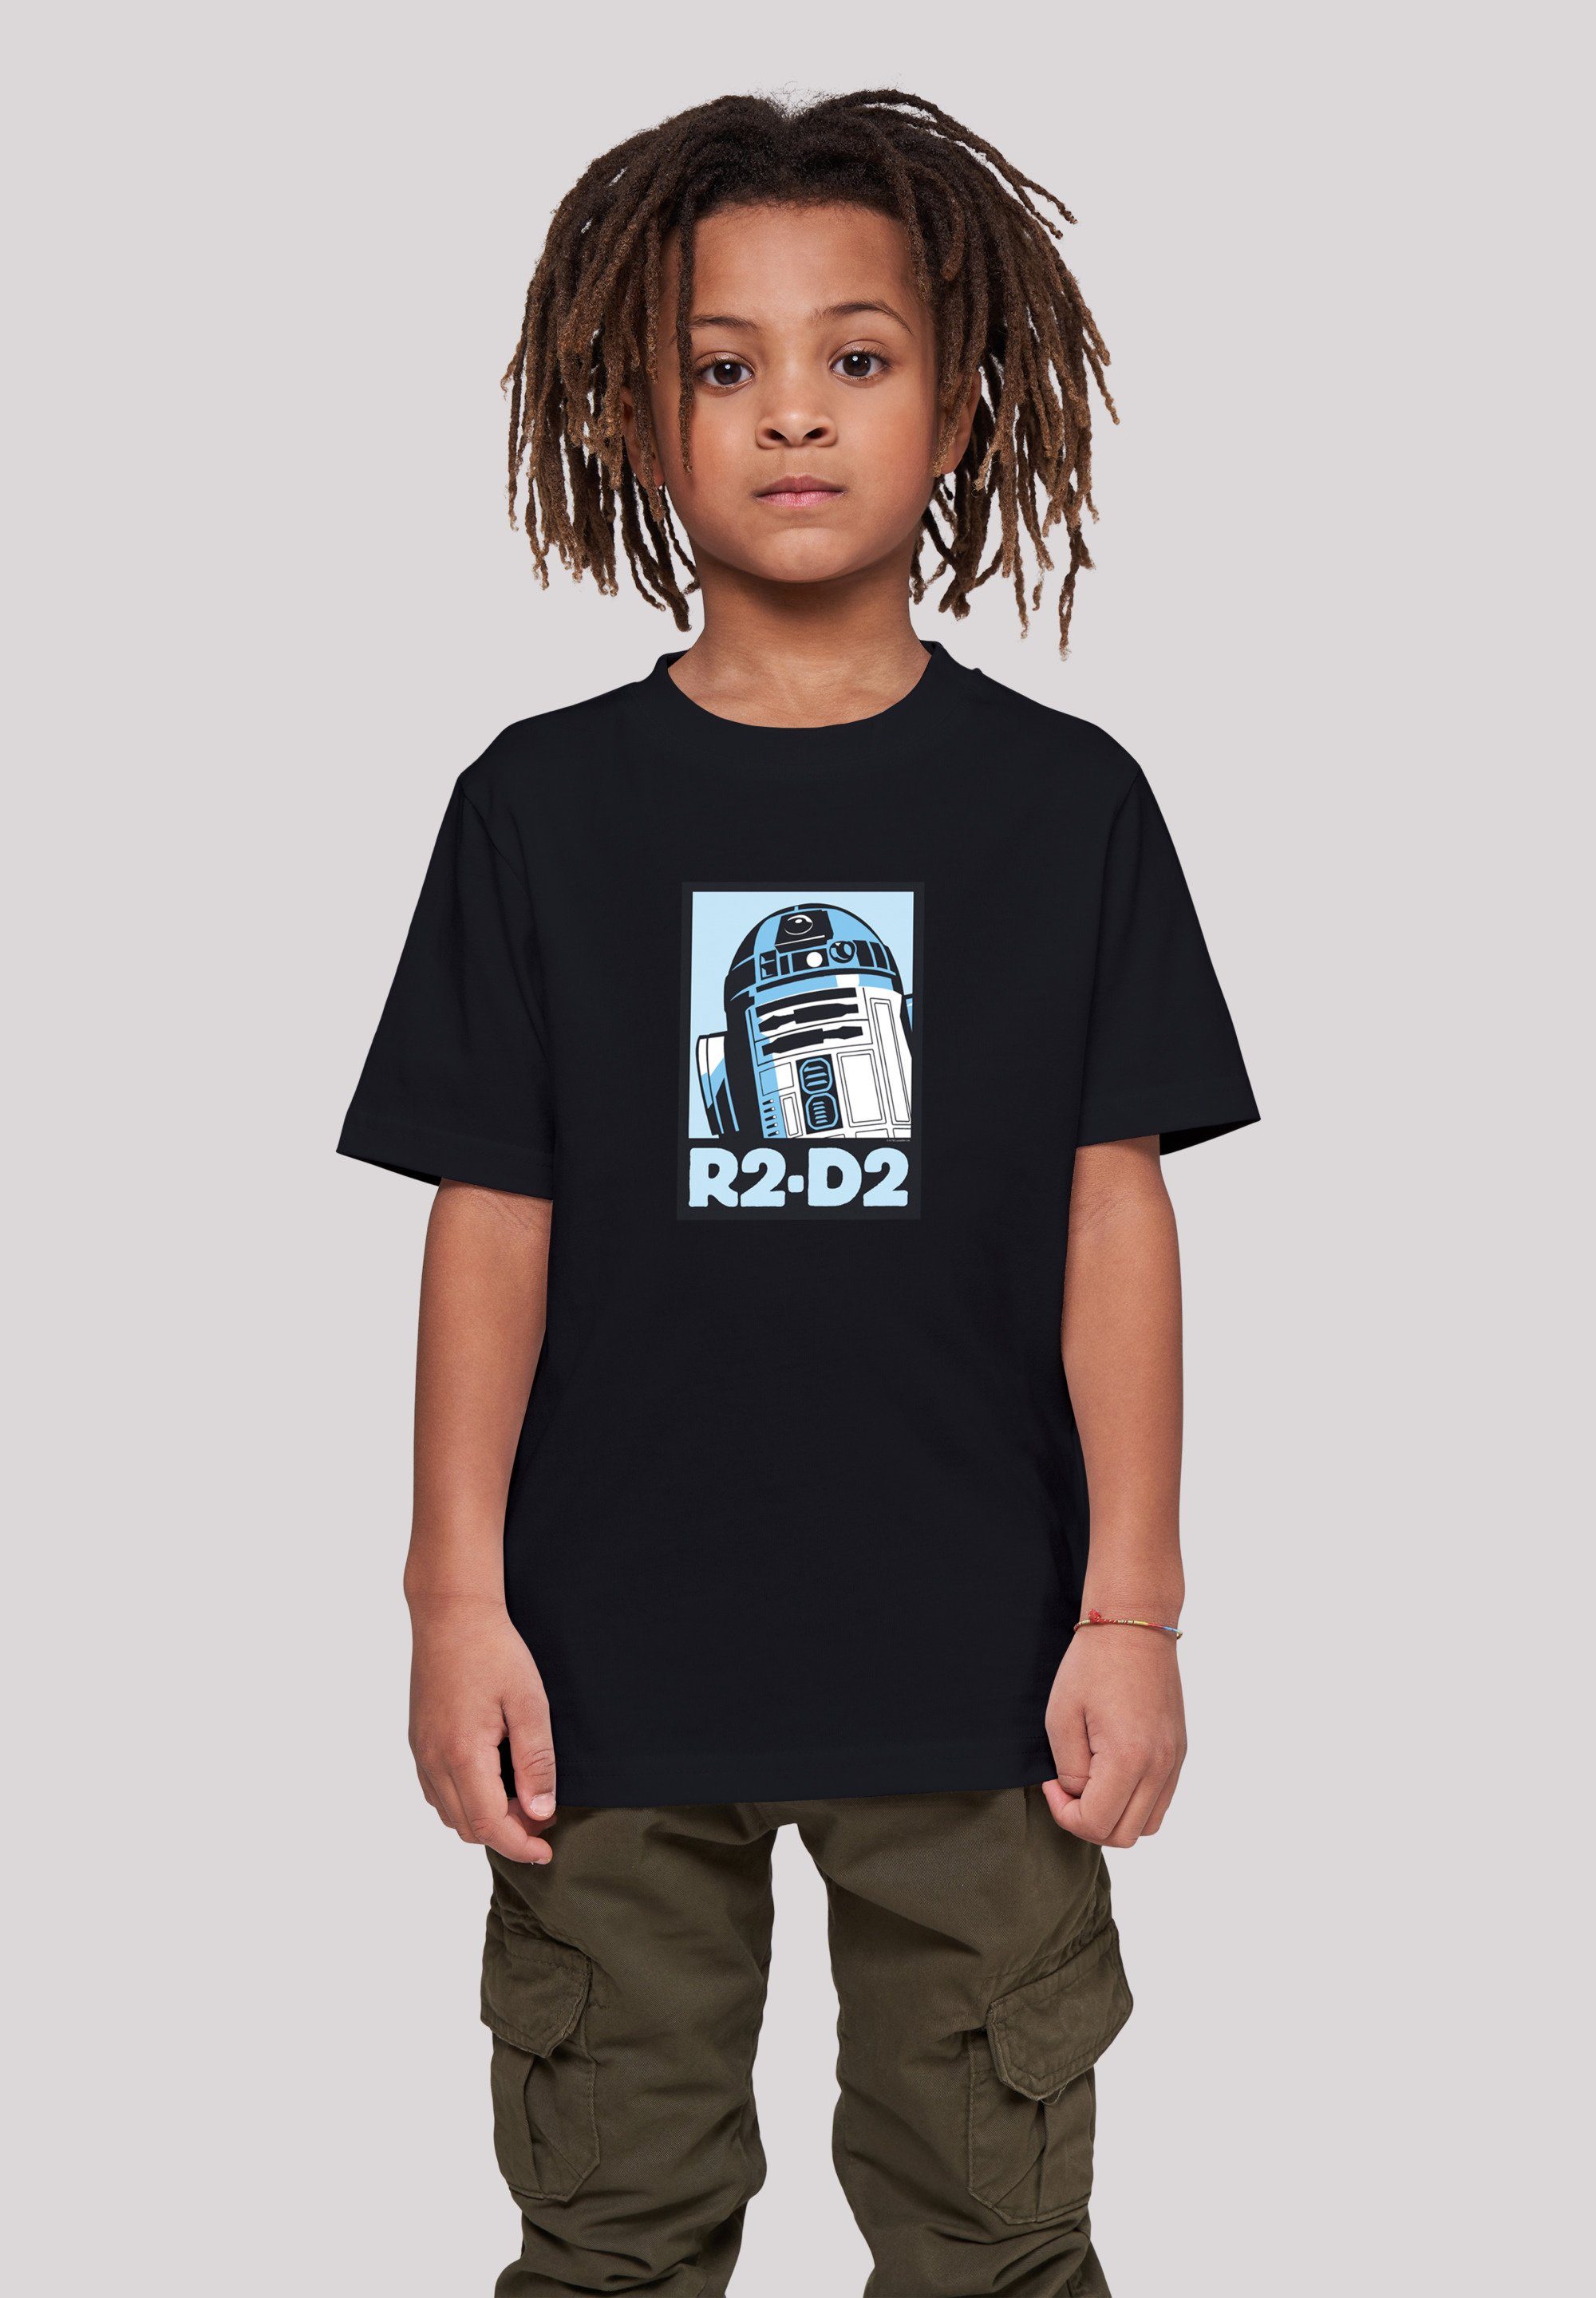 F4NT4STIC T-Shirt Star Wars R2-D2 Poster Unisex Kinder,Premium Merch,Jungen,Mädchen,Bedruckt